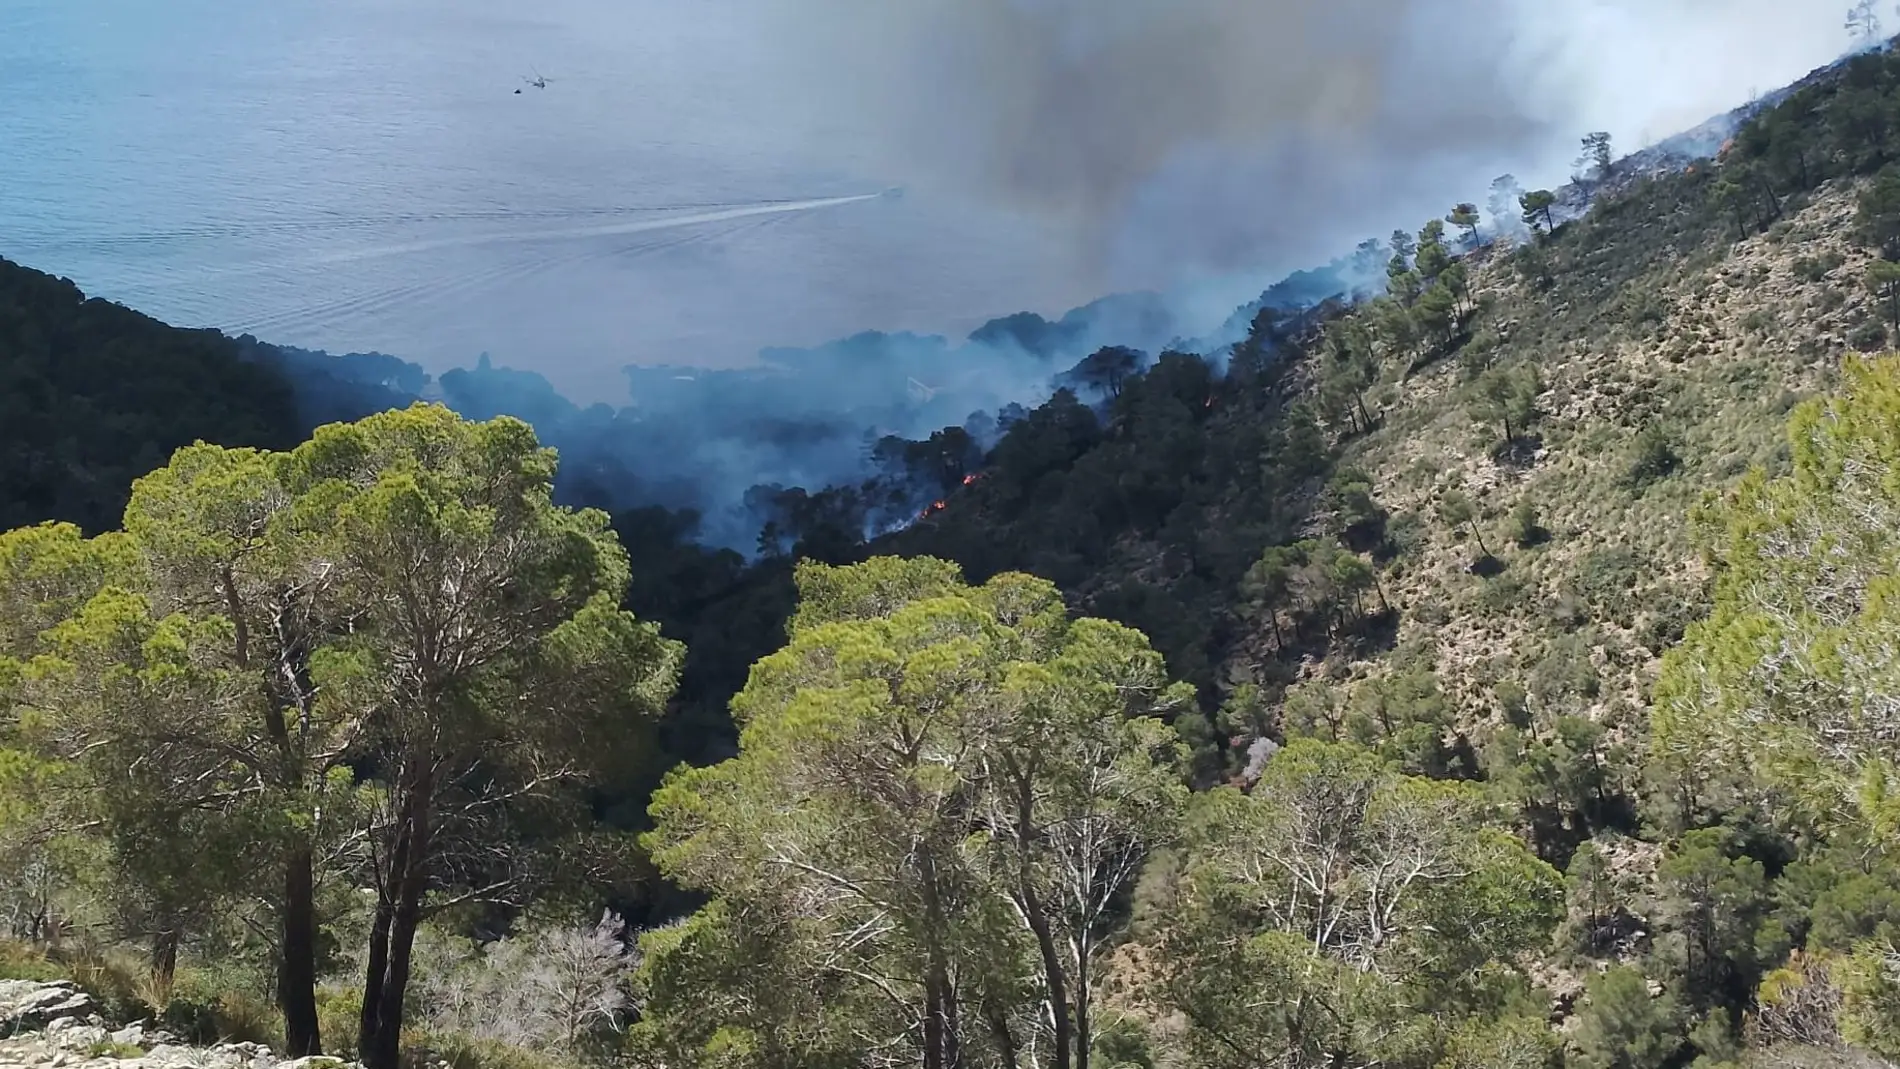 Un incendio forestal desatado en Costa dels Pins ha llevado al desalojo de 12 personas. 